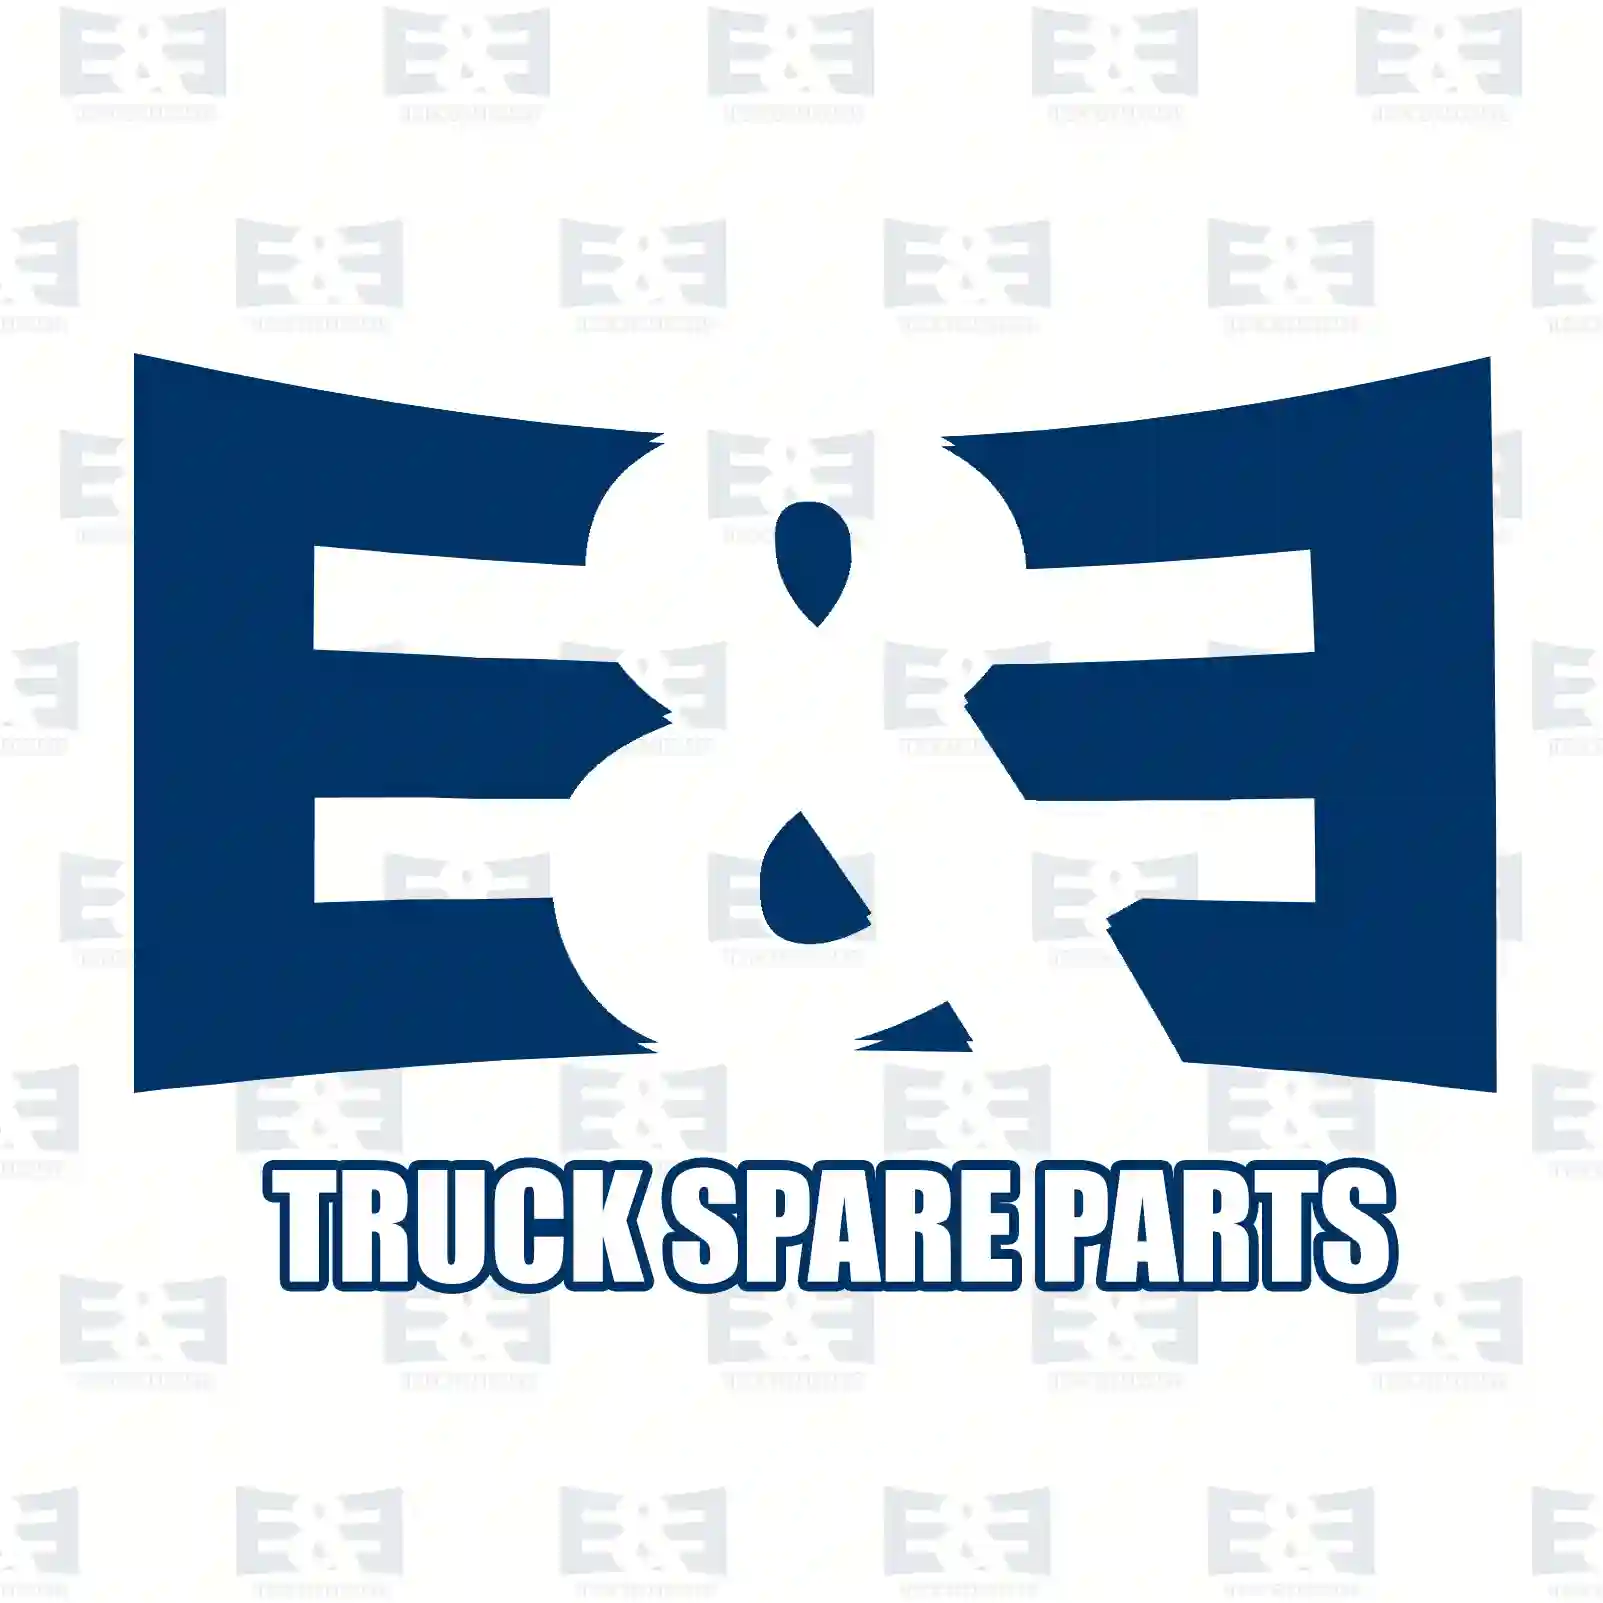 Cabin tilt cylinder, 2E2275673, 7422070299, 7422302641, 7422928449, , , , ||  2E2275673 E&E Truck Spare Parts | Truck Spare Parts, Auotomotive Spare Parts Cabin tilt cylinder, 2E2275673, 7422070299, 7422302641, 7422928449, , , , ||  2E2275673 E&E Truck Spare Parts | Truck Spare Parts, Auotomotive Spare Parts